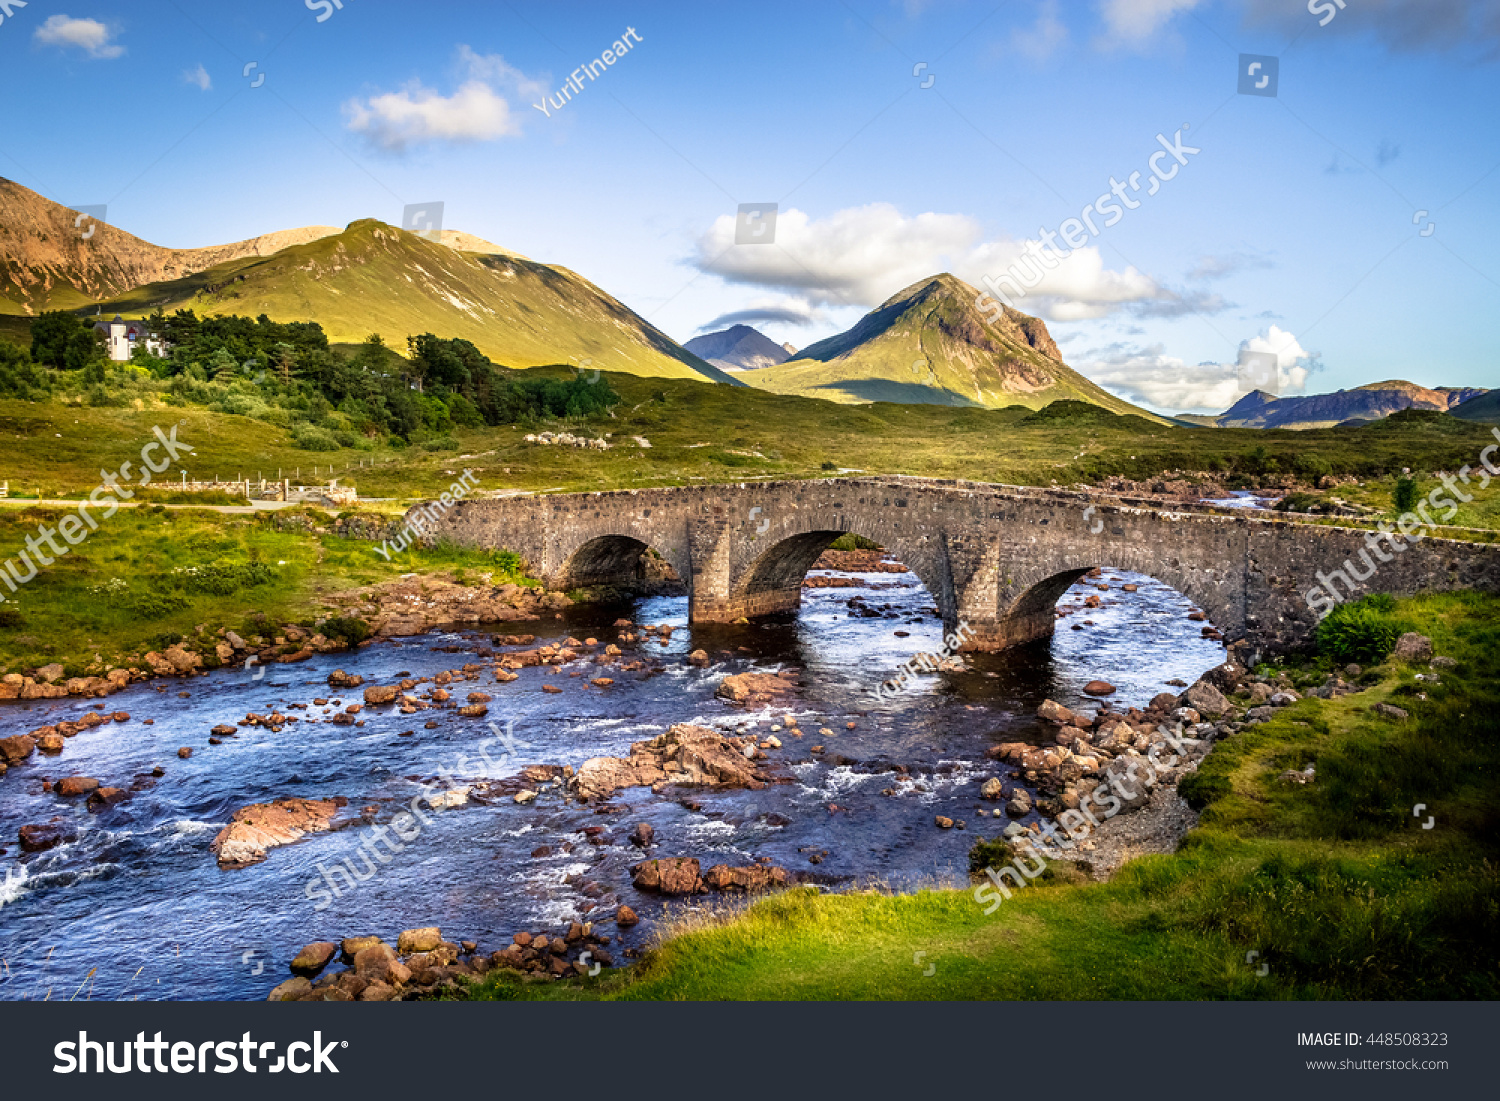 スコットランドのスカイ島 スリガチャンの古いビンテージ レンガ橋で スコットランド風景 植生 丘 新鮮な青い水と晴れた空を持つ山 の写真素材 今すぐ編集